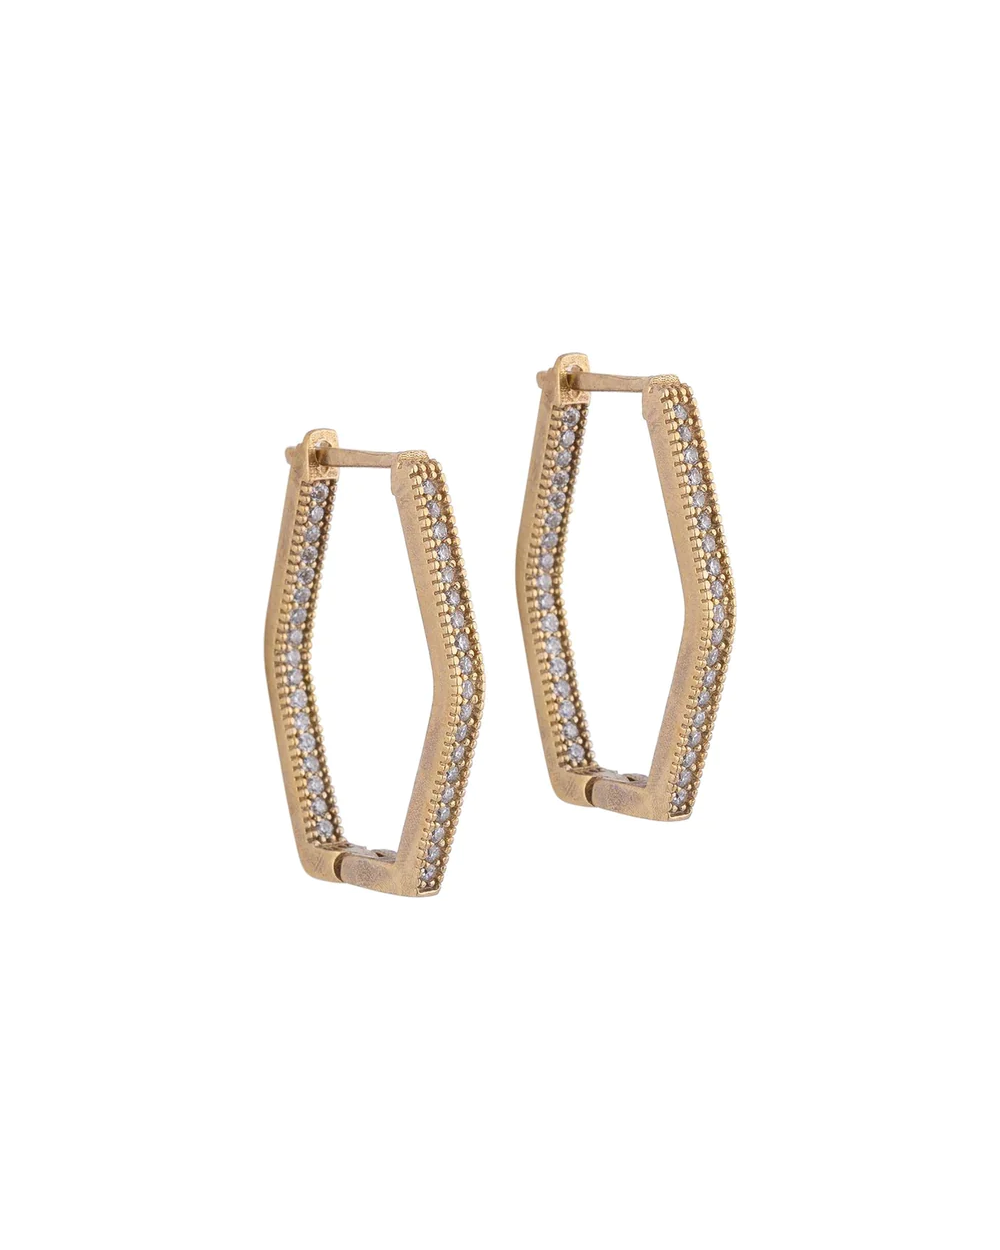 Rhombus Earrings With Stones